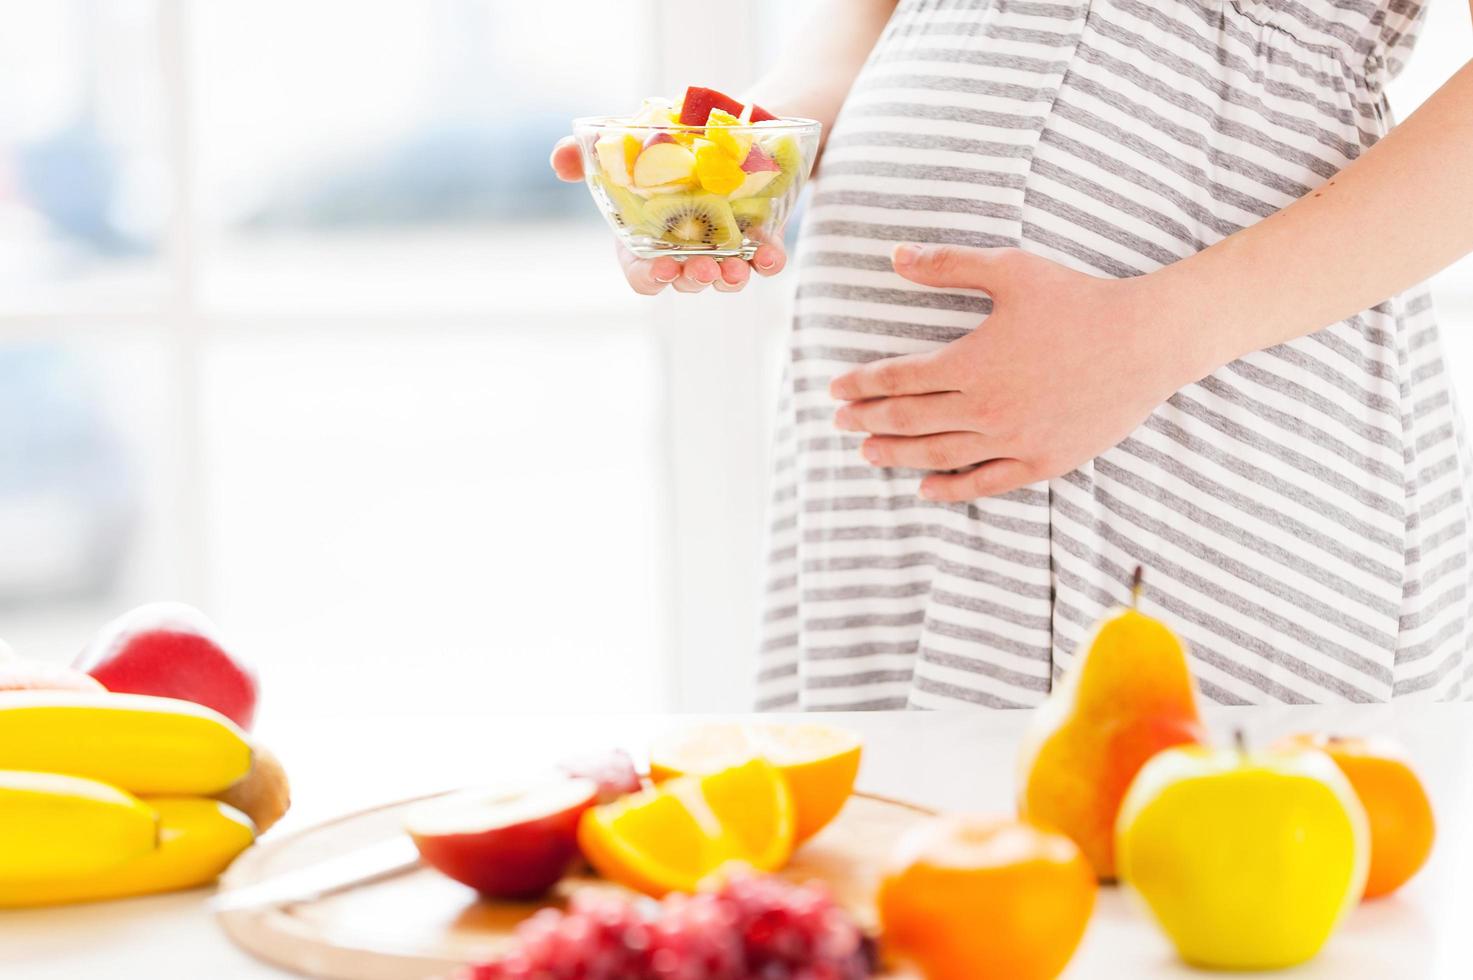 solo comida fresca y sana para mi bebe. imagen recortada de una mujer embarazada sosteniendo un plato con ensalada de frutas foto